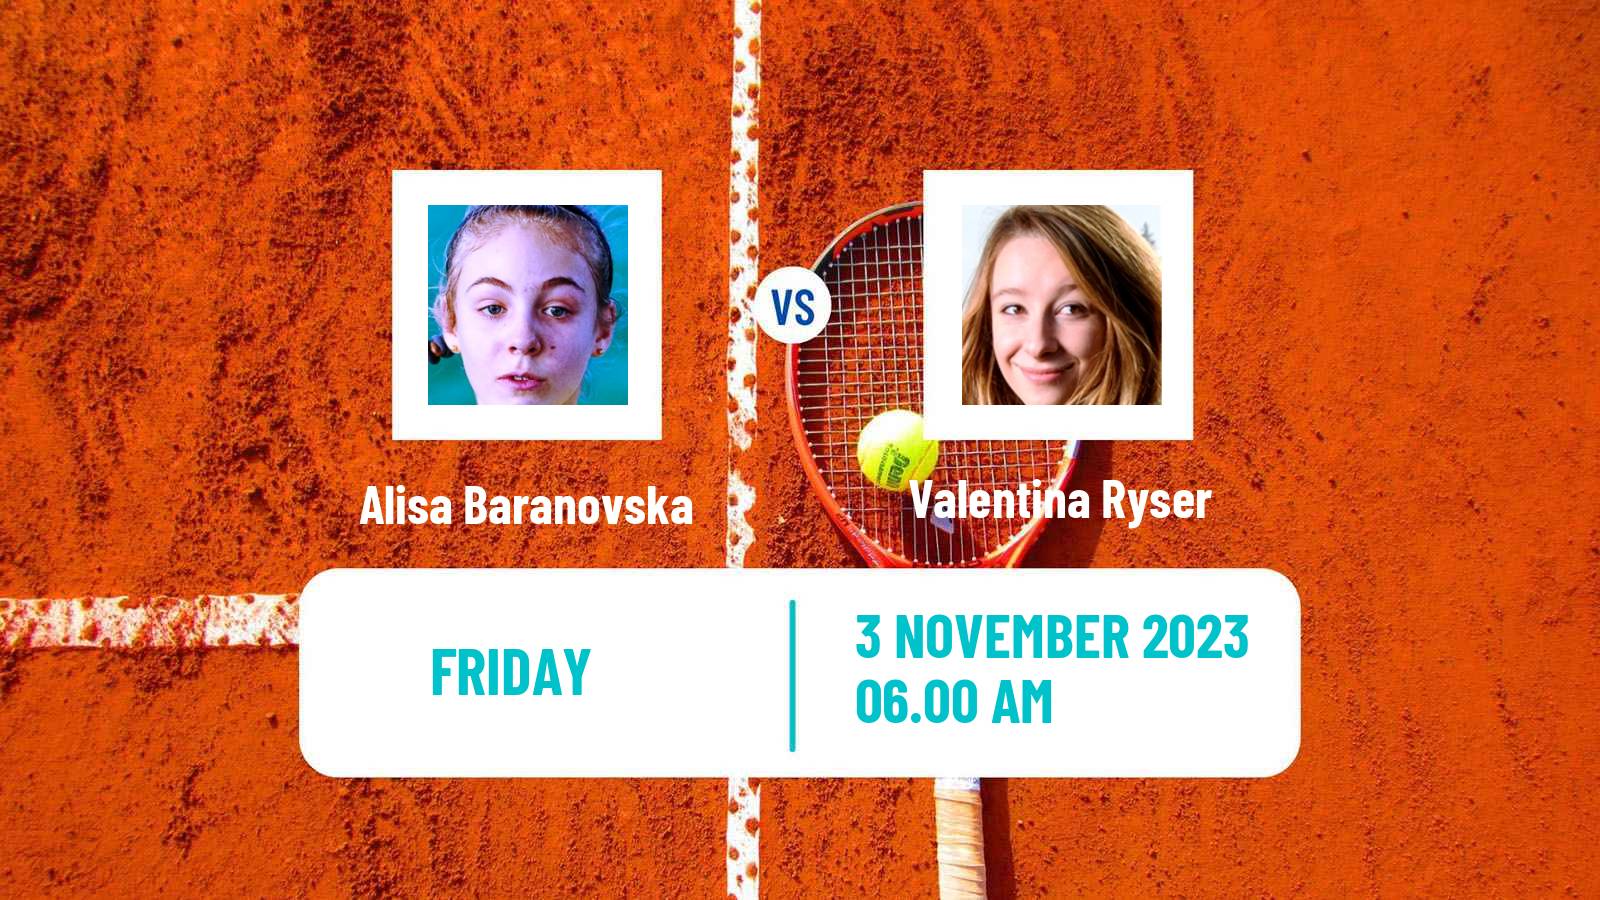 Tennis ITF W25 Sunderland Women Alisa Baranovska - Valentina Ryser